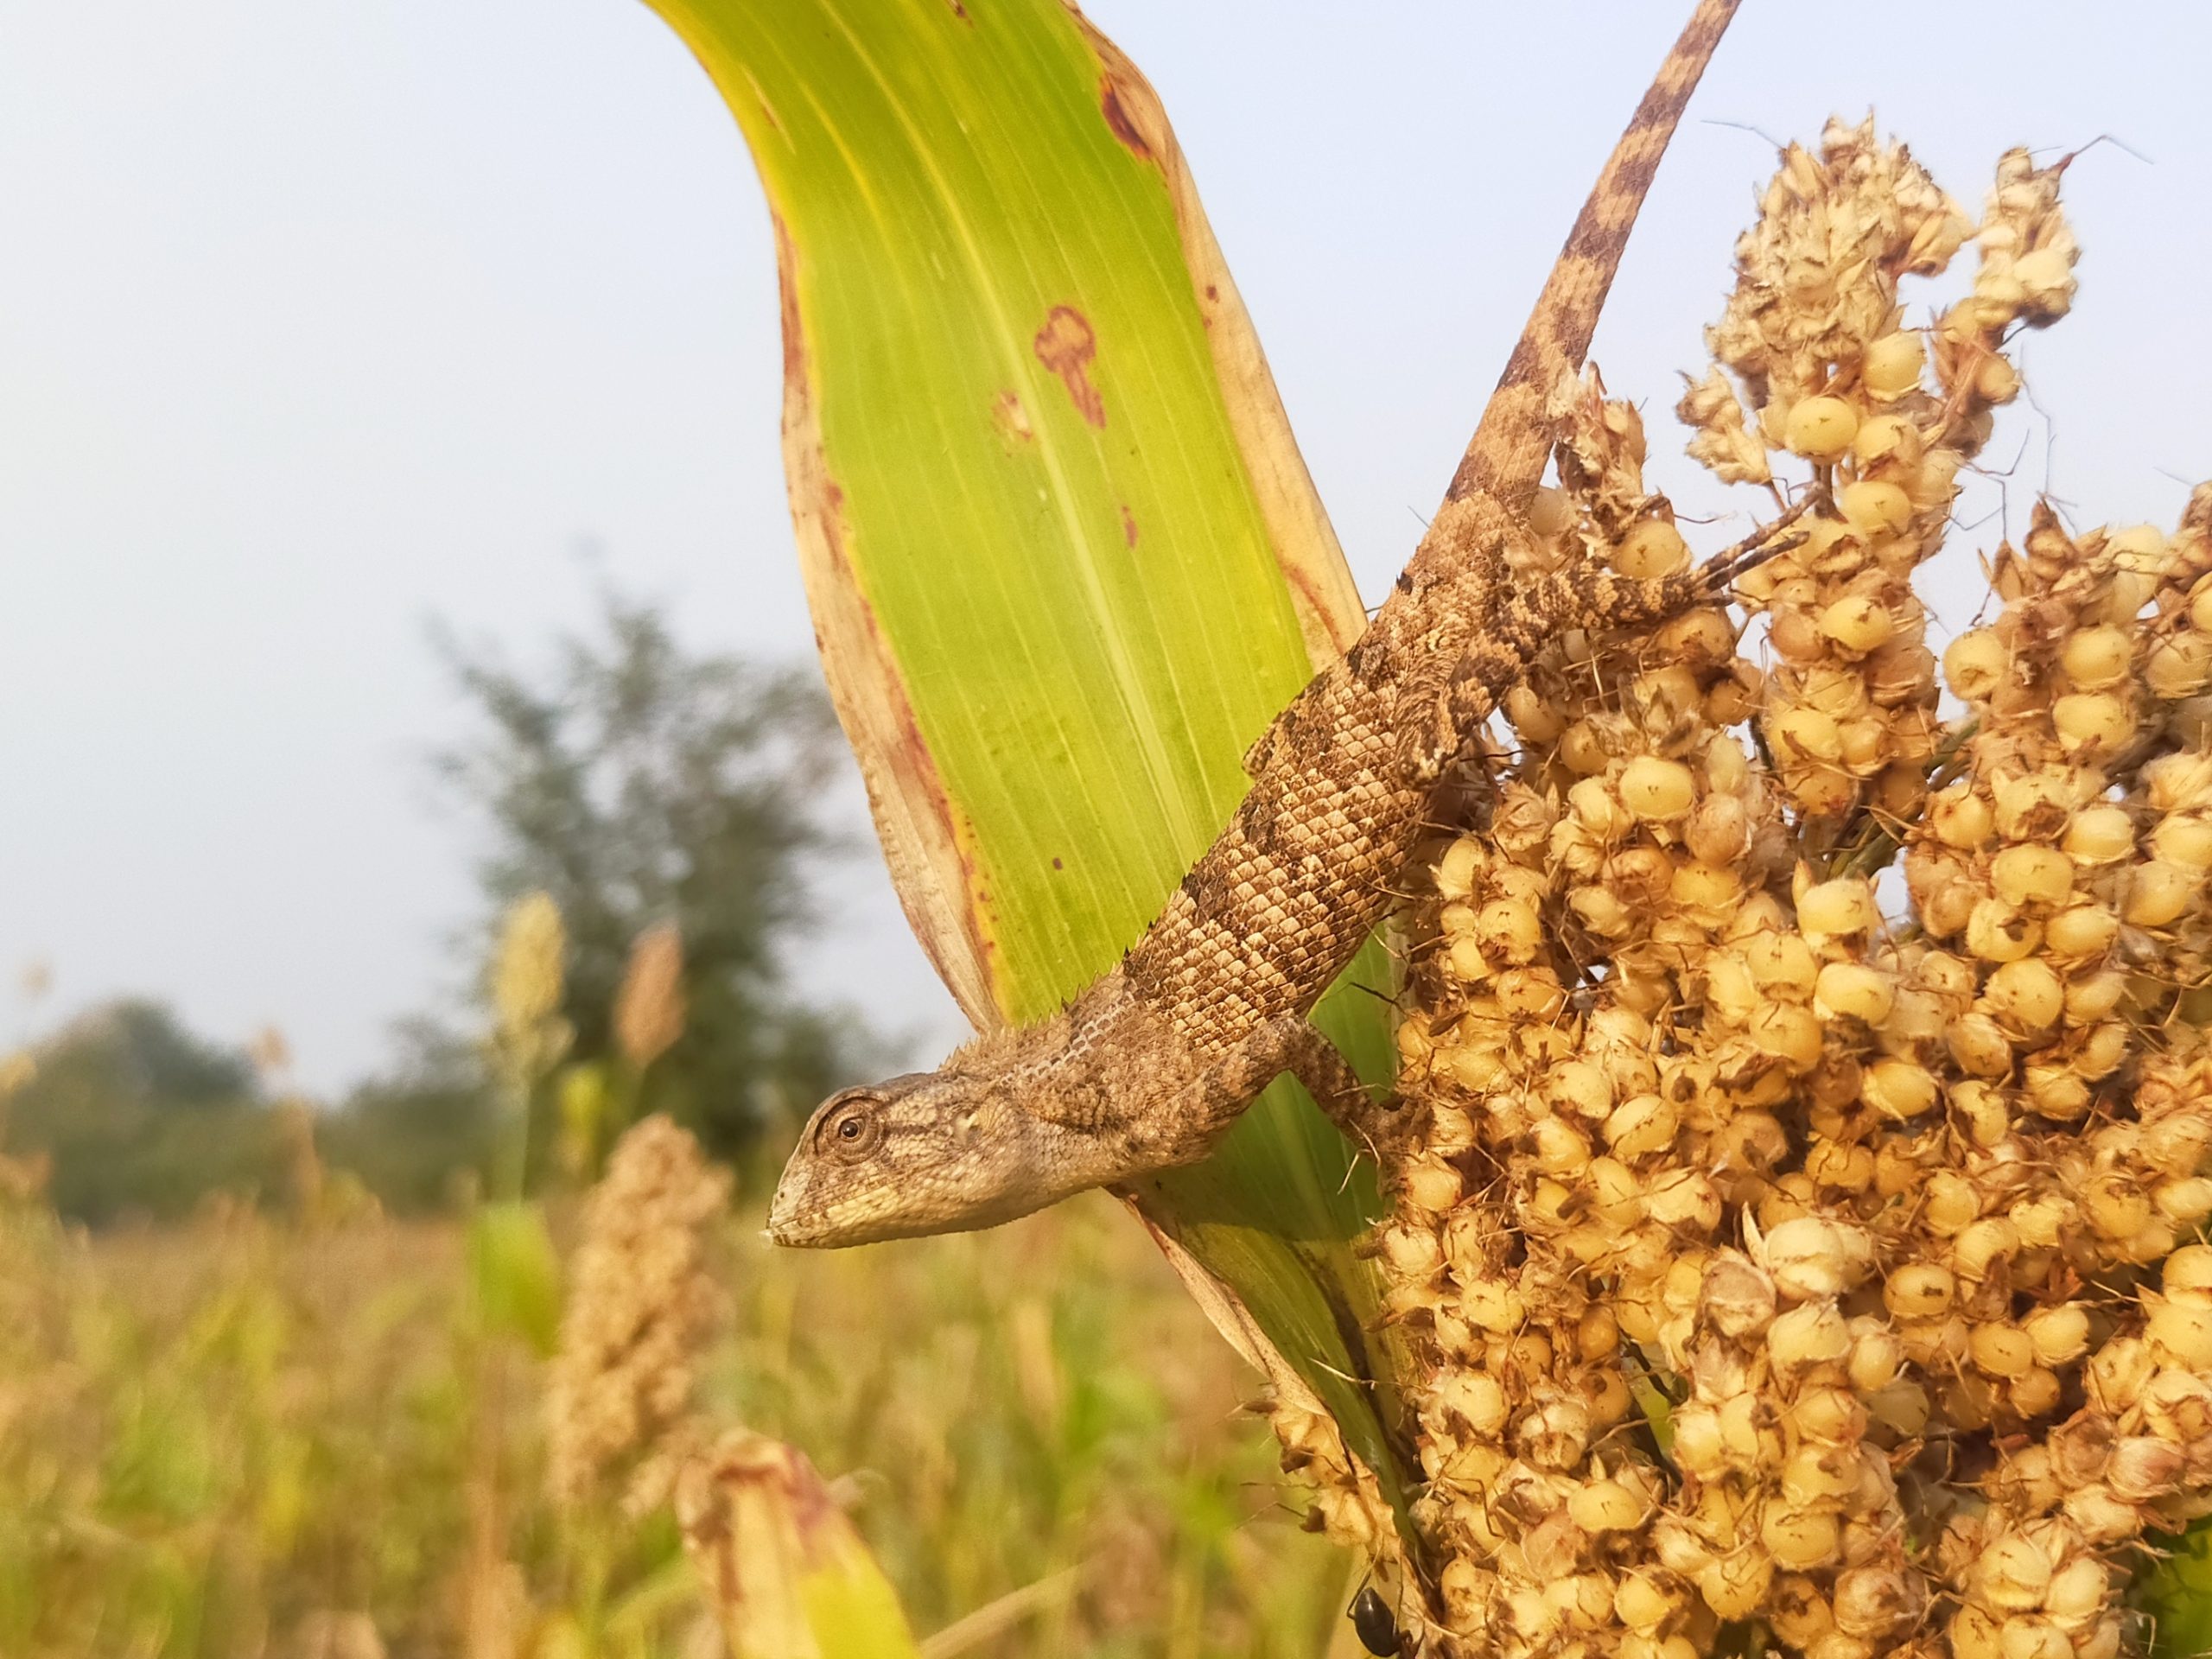 A garden lizard on the Jawar plant